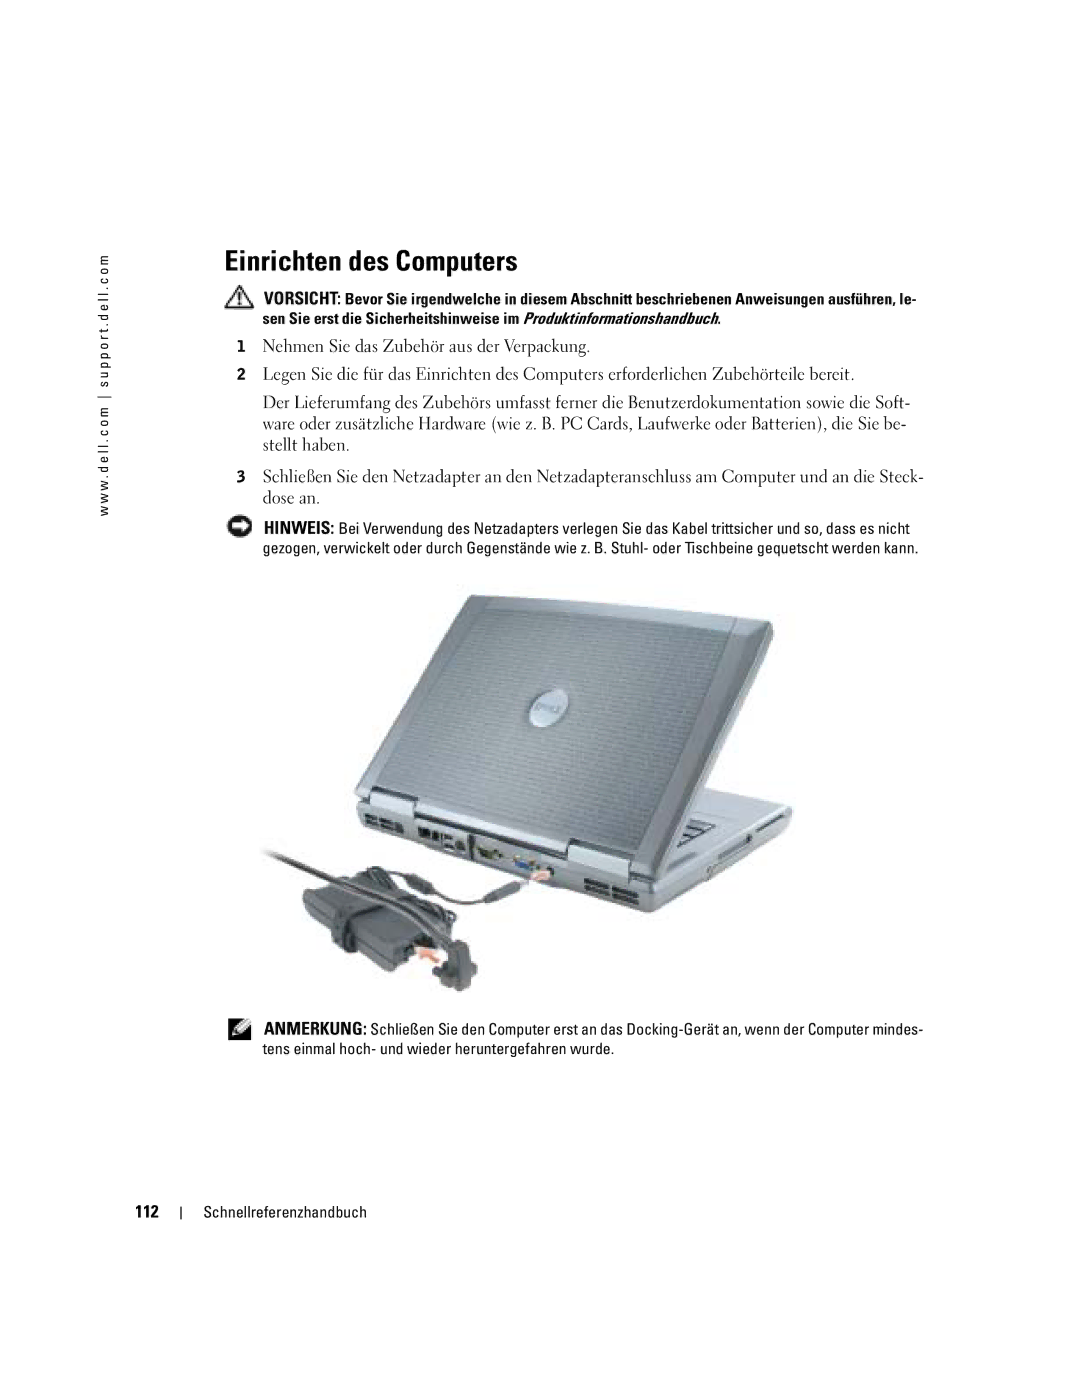 Dell M70 Mobile manual Einrichten des Computers, 112 